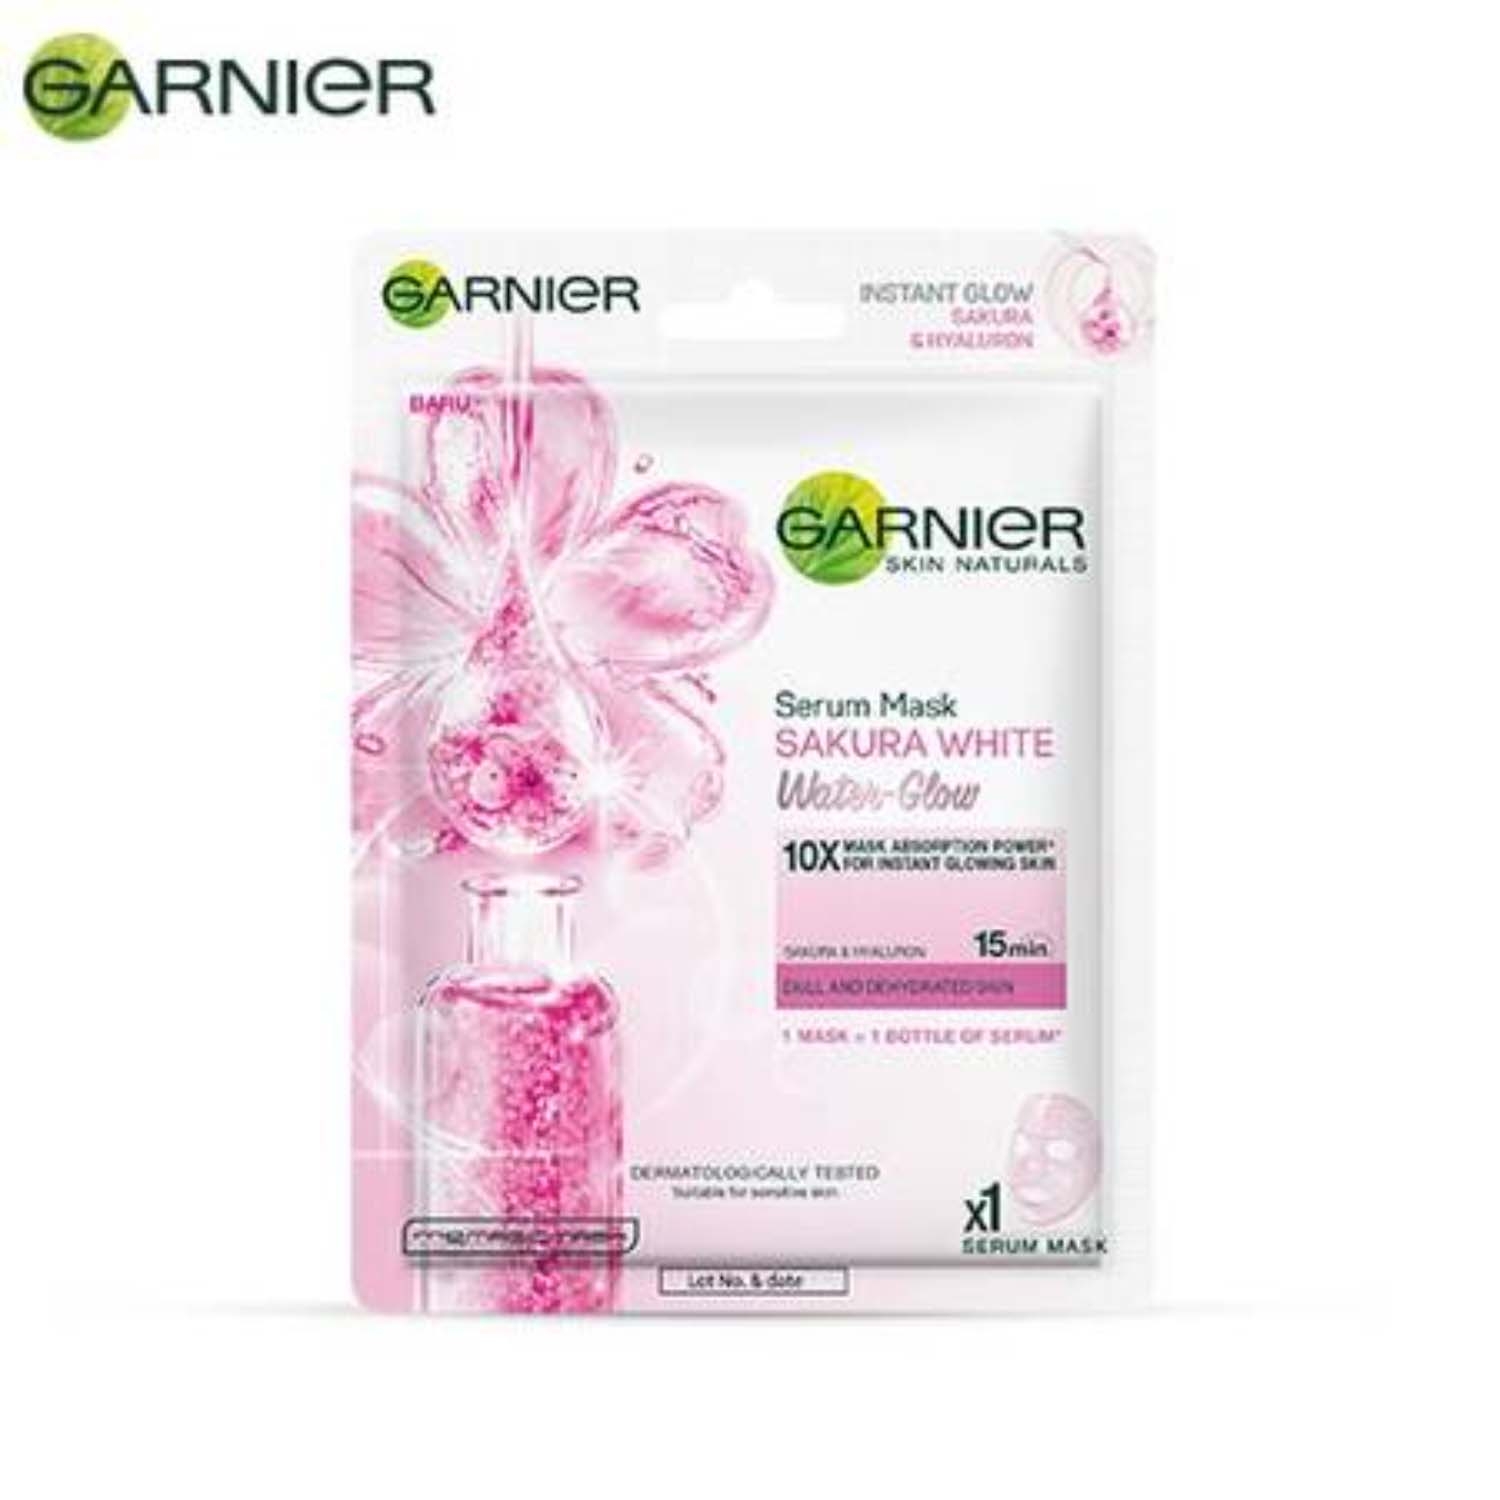 Garnier | Garnier Skin Naturals Sakura White Face Serum Sheet Mask (28g)